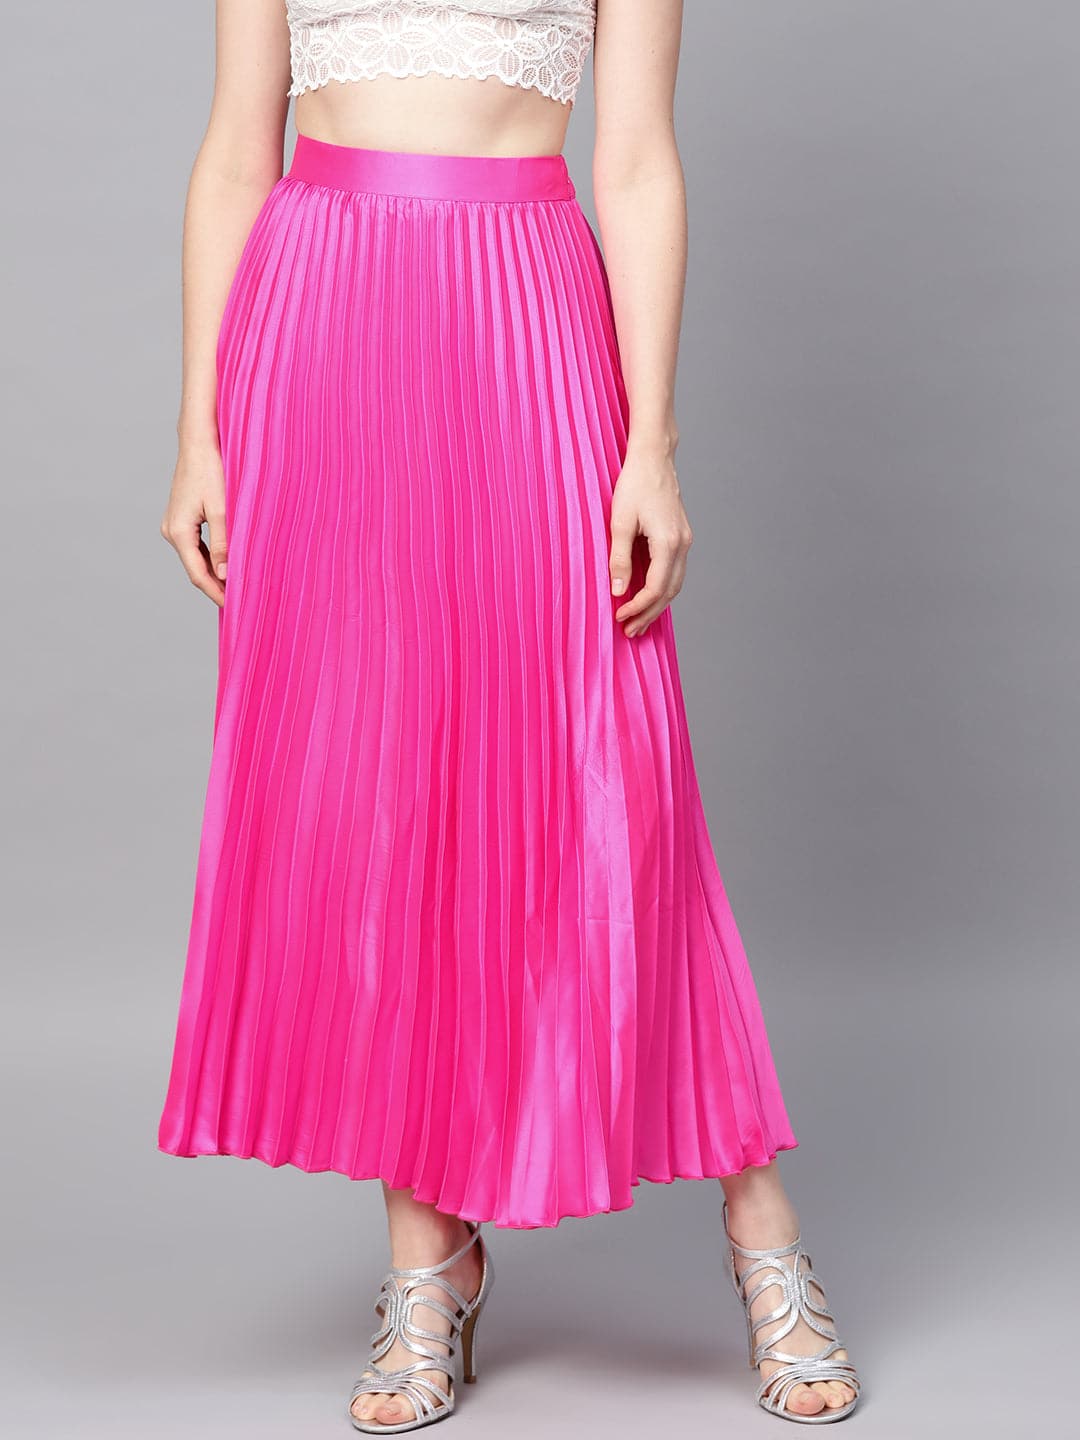 Pink Pleated Skirt  Olga de Polga